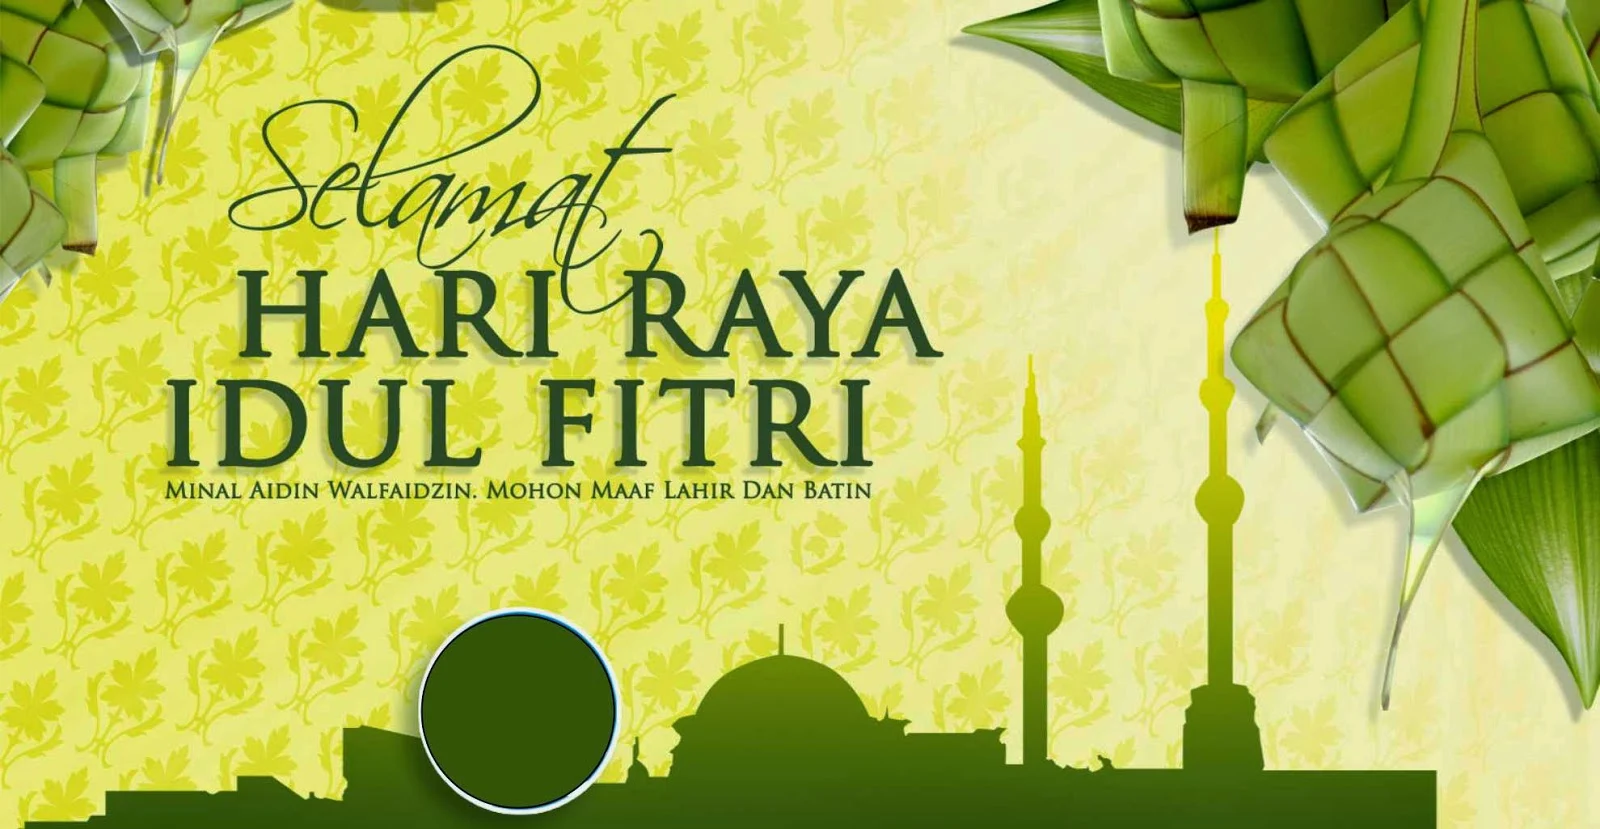 Ucapan Selamat Idul Fitri yang Benar sesuai Sunnah Rasul